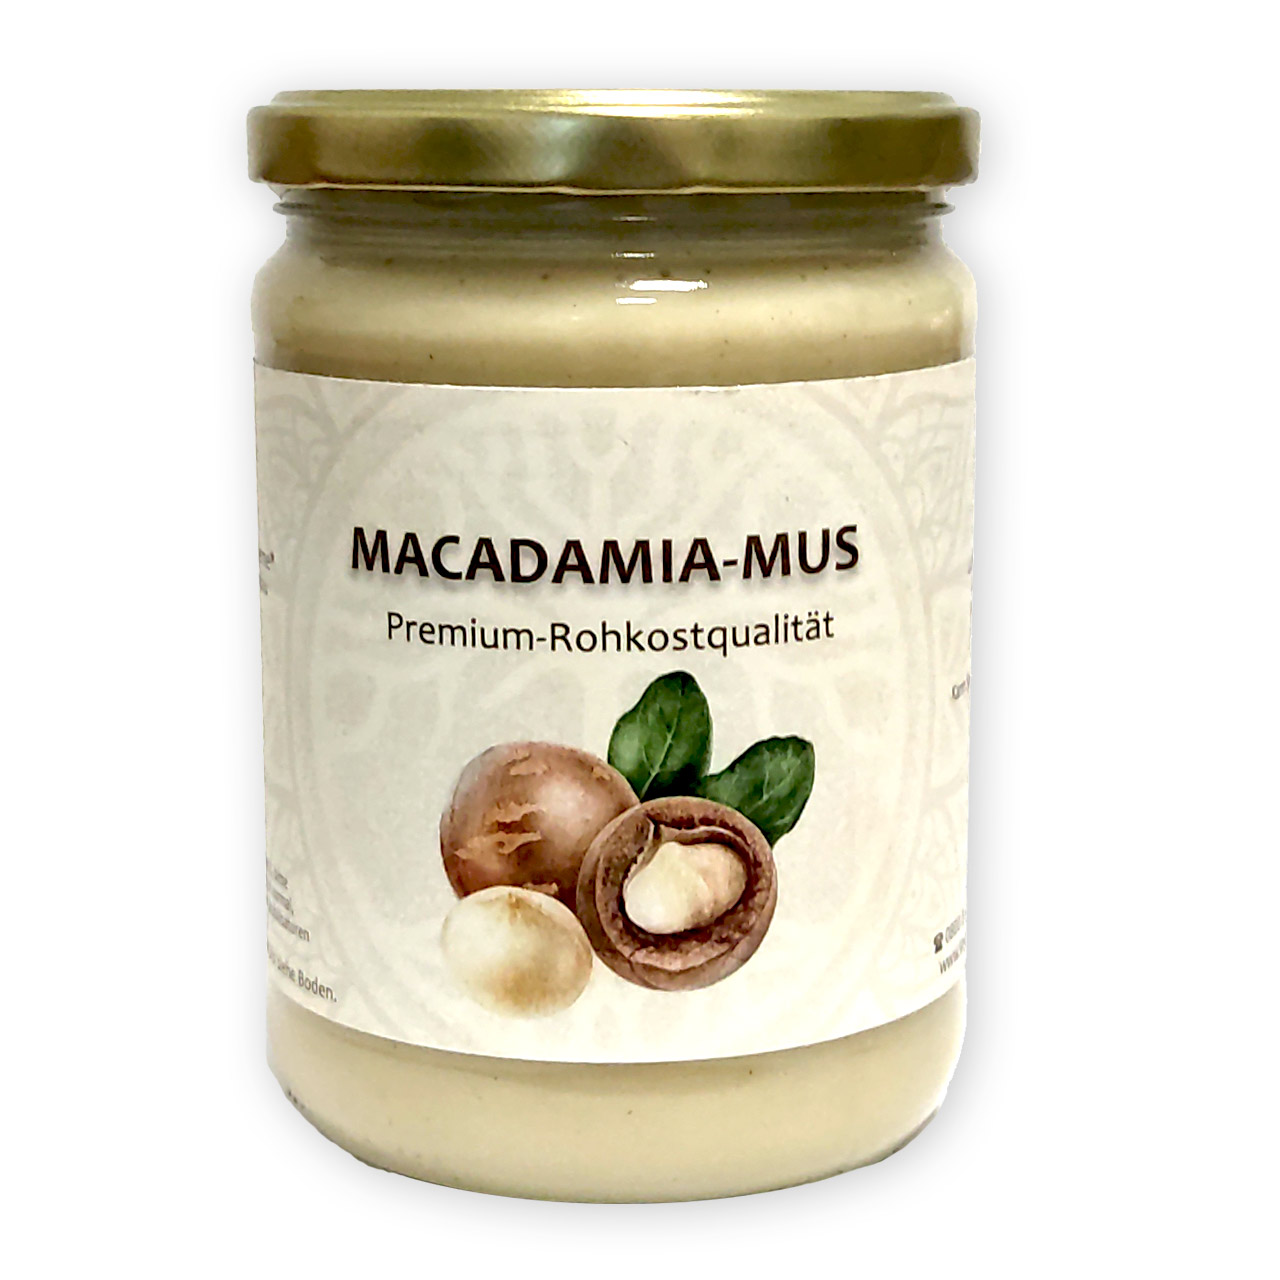 Macadamia Nüsse roh 3 kg kaufen